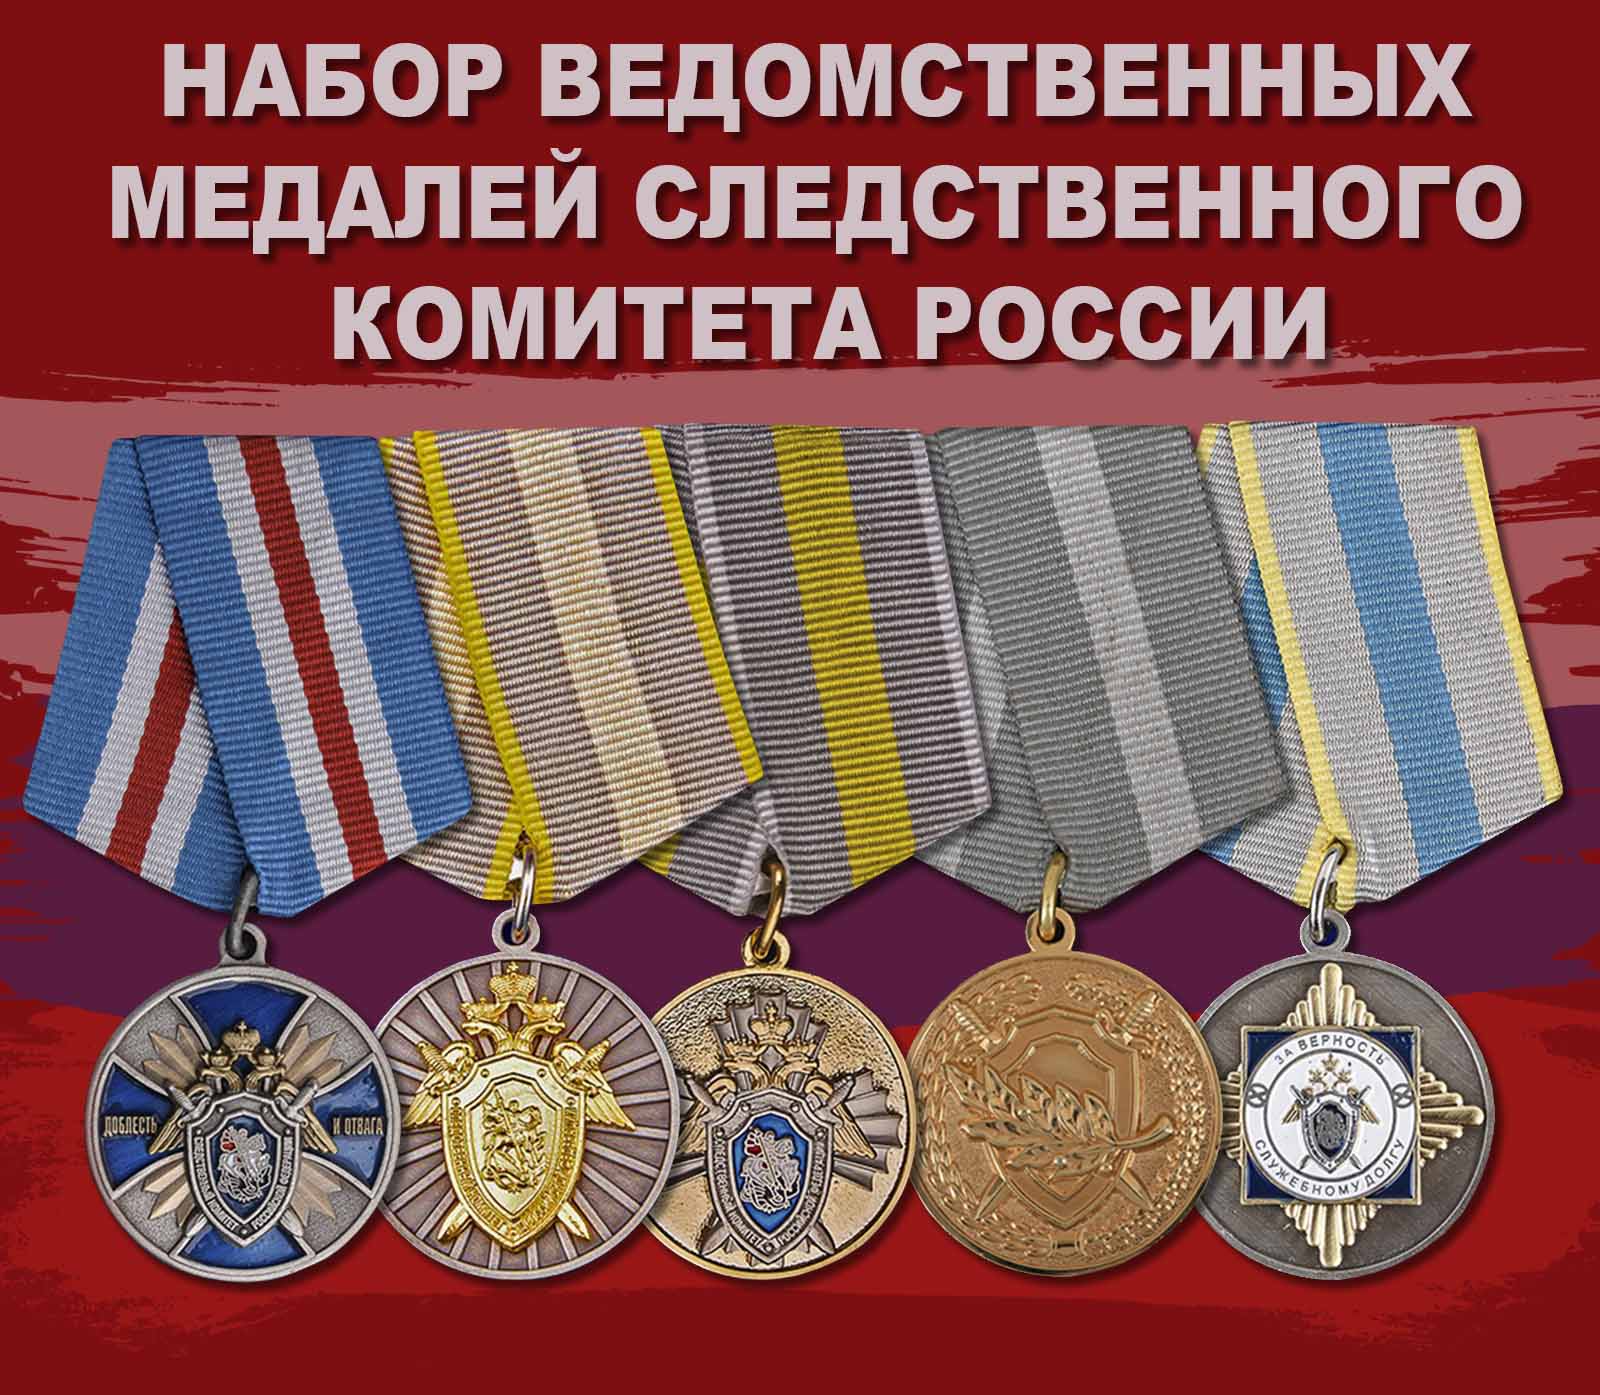 Купить набор ведомственных медалей Следственного комитета России